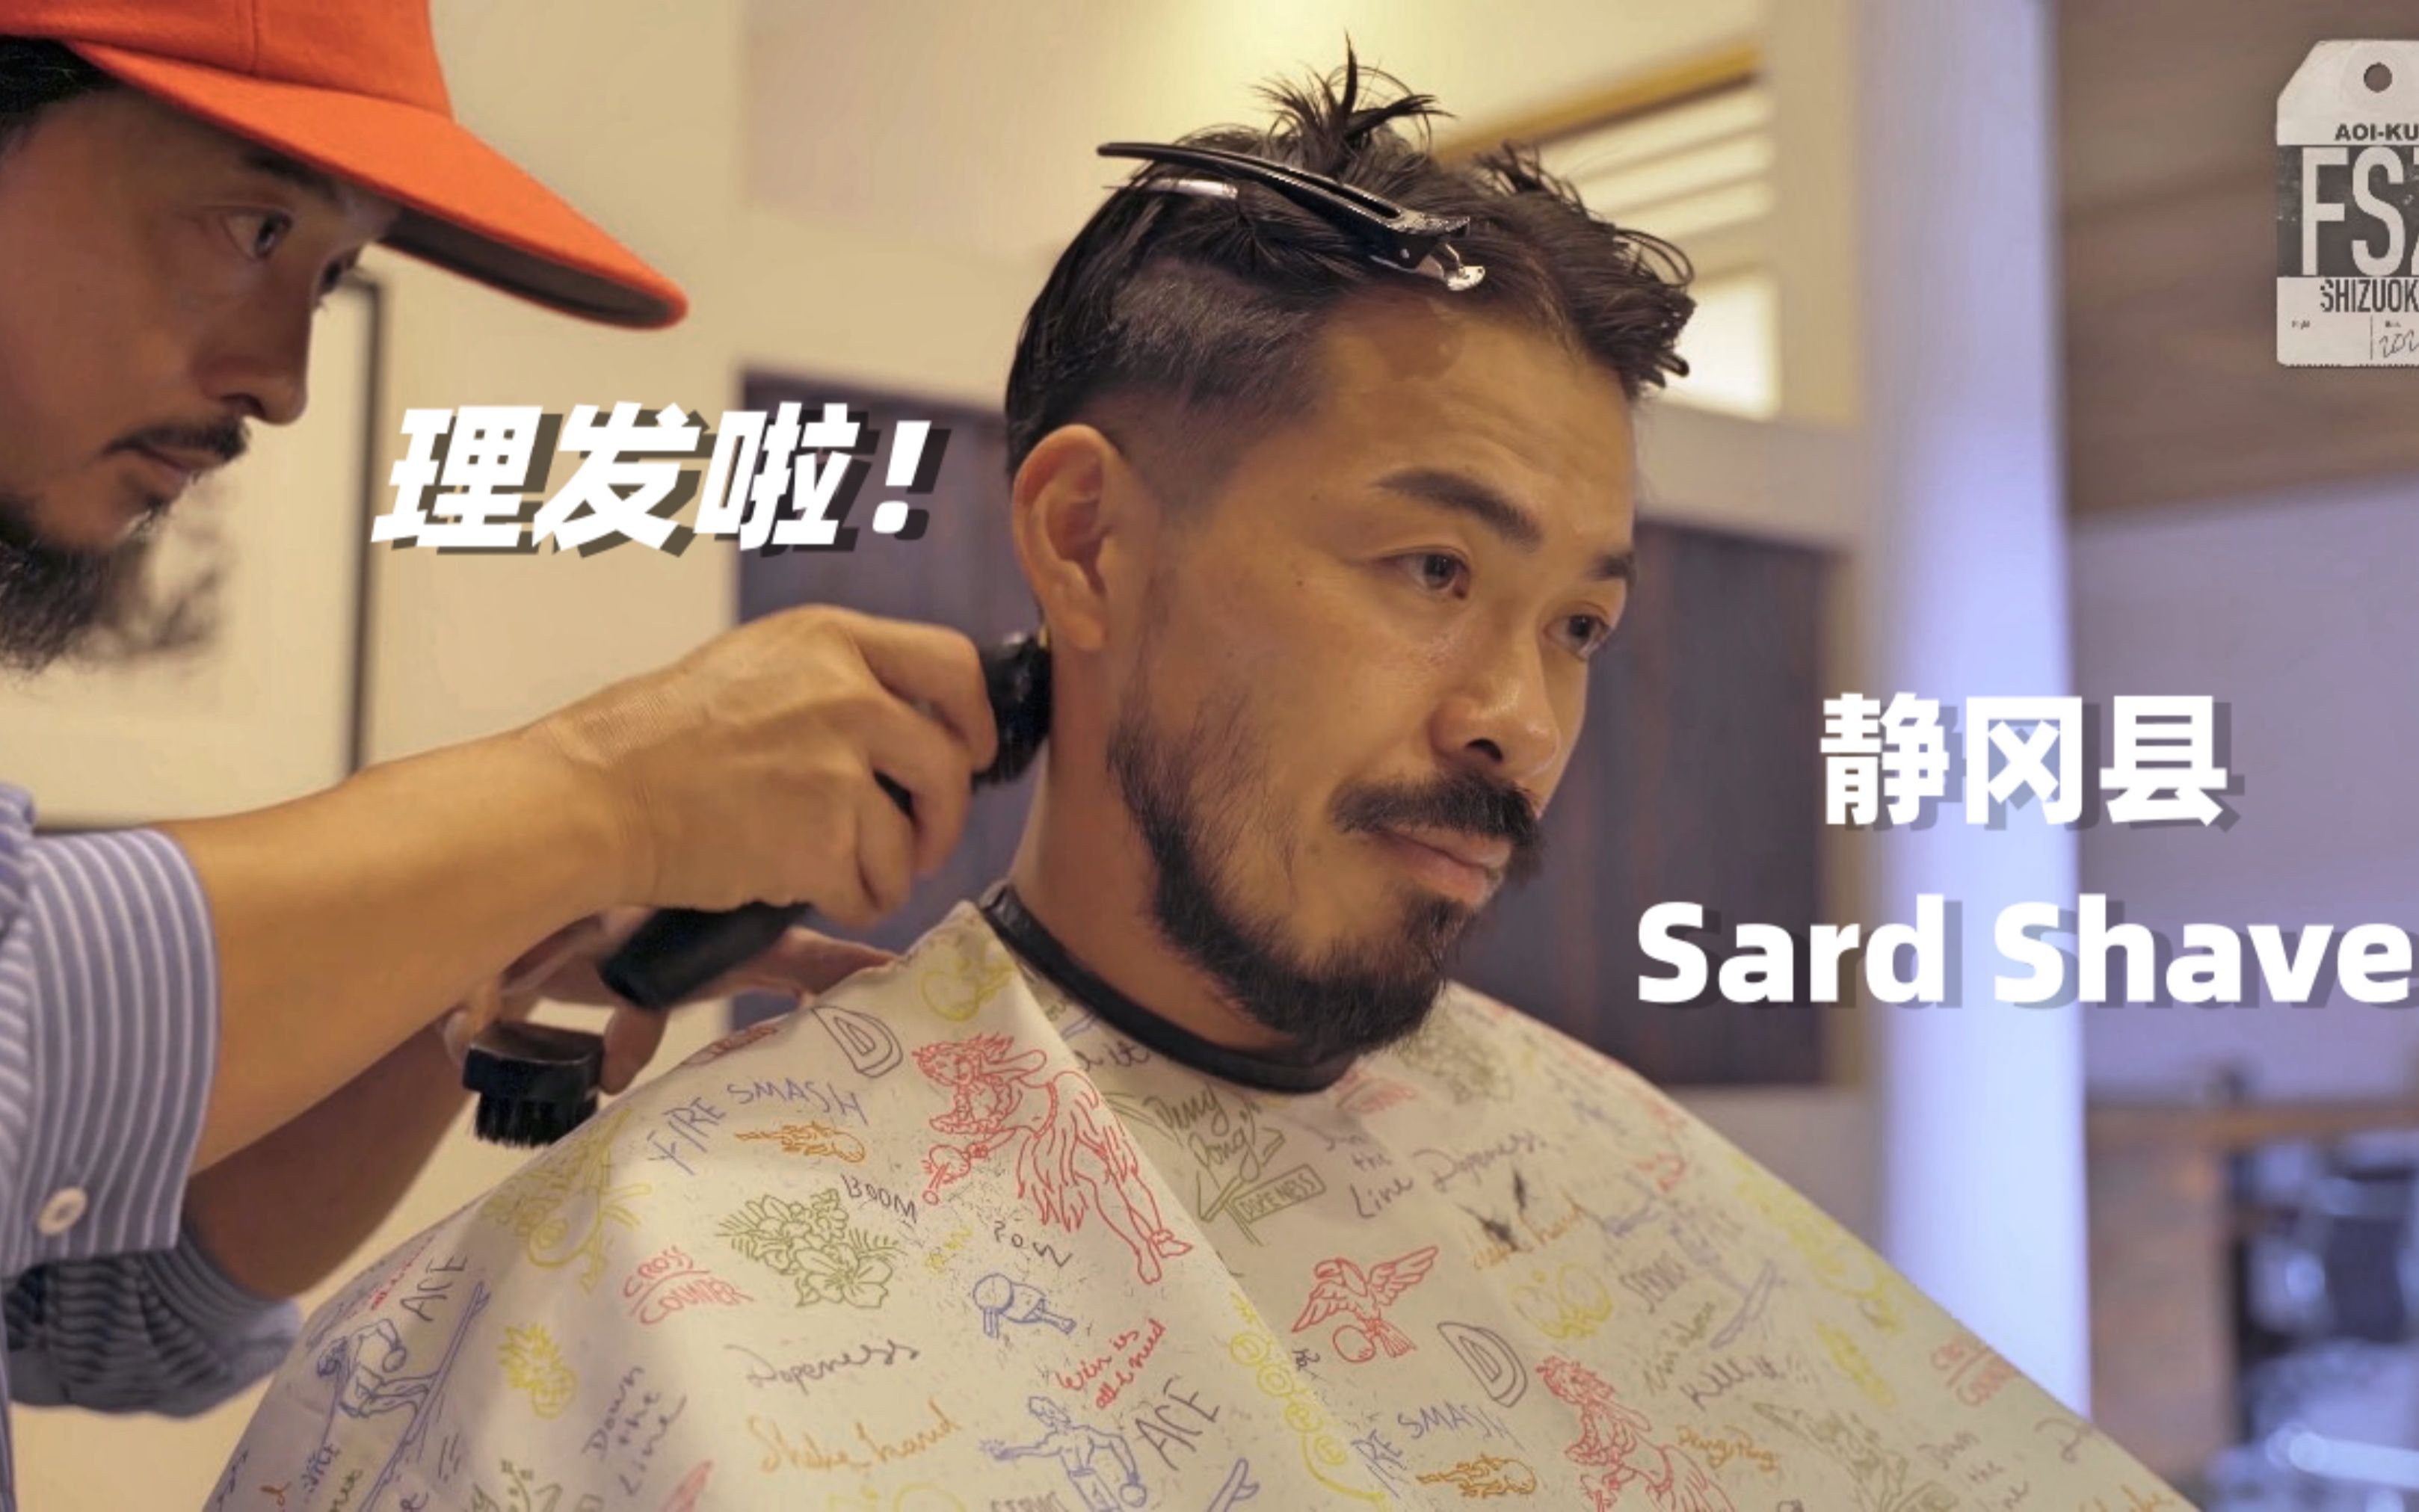 男生理发，barber shop，日本男士发型，助眠，这一集，一起去静冈县 Sard shave理发店，看理发，学知识，放松一下吧